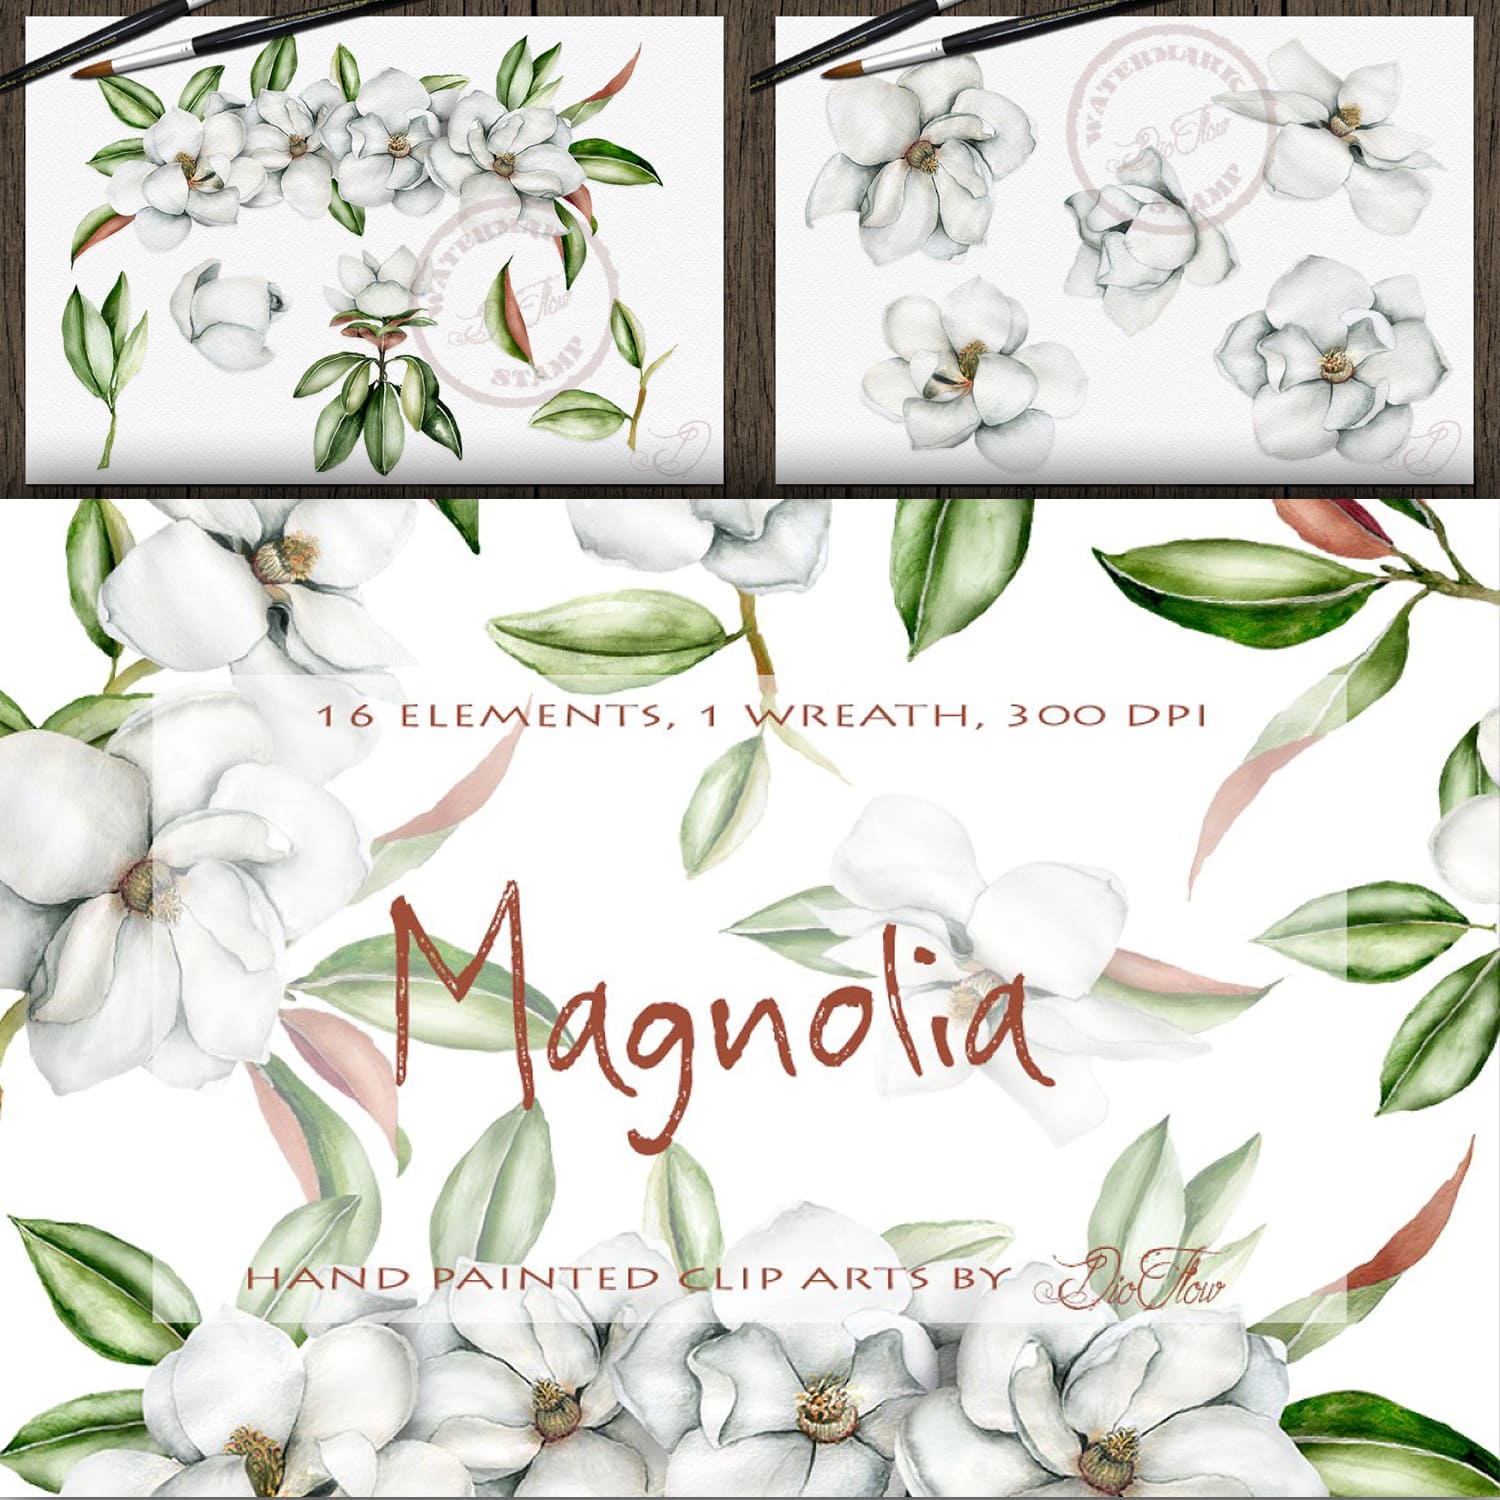 Magnolia Watercolor Clip Art cover.